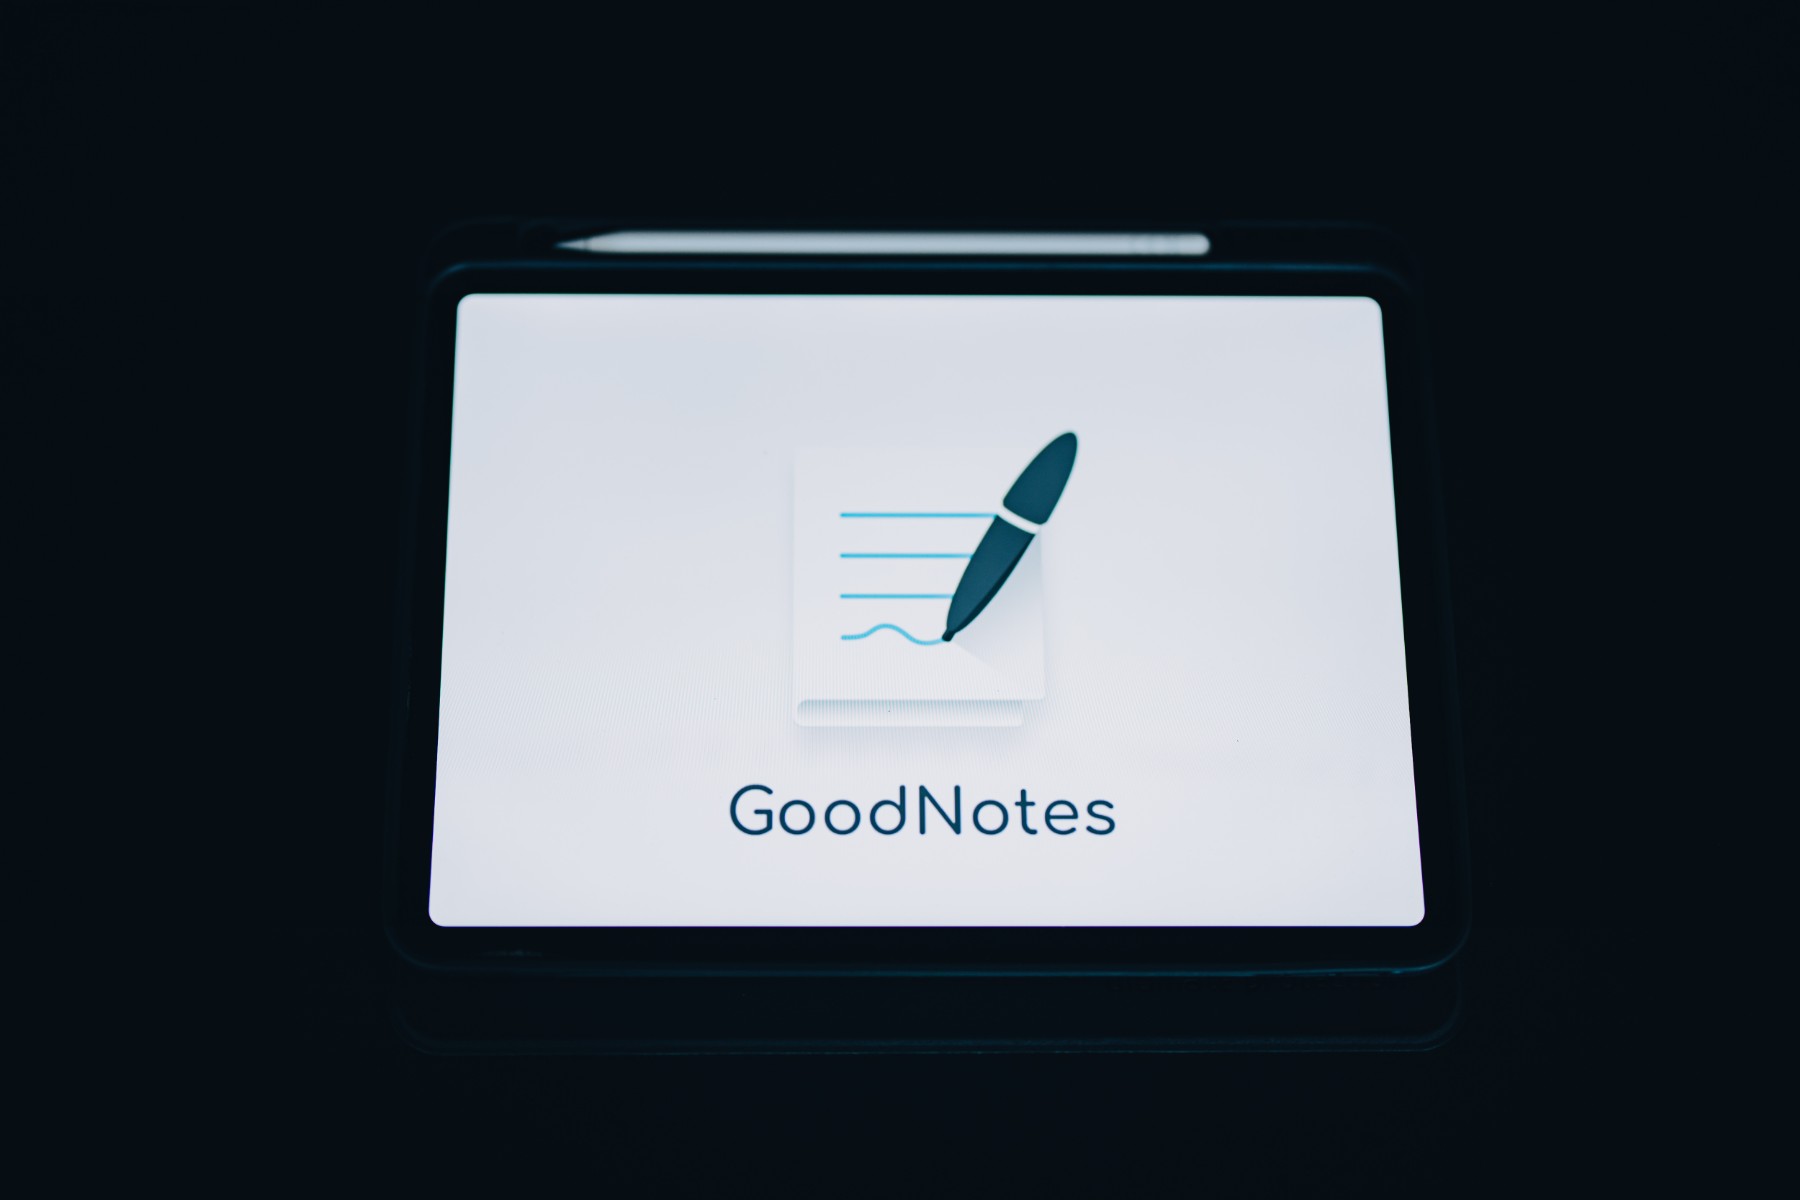 Vertiefung - GoodNotes in iPad-Klassen